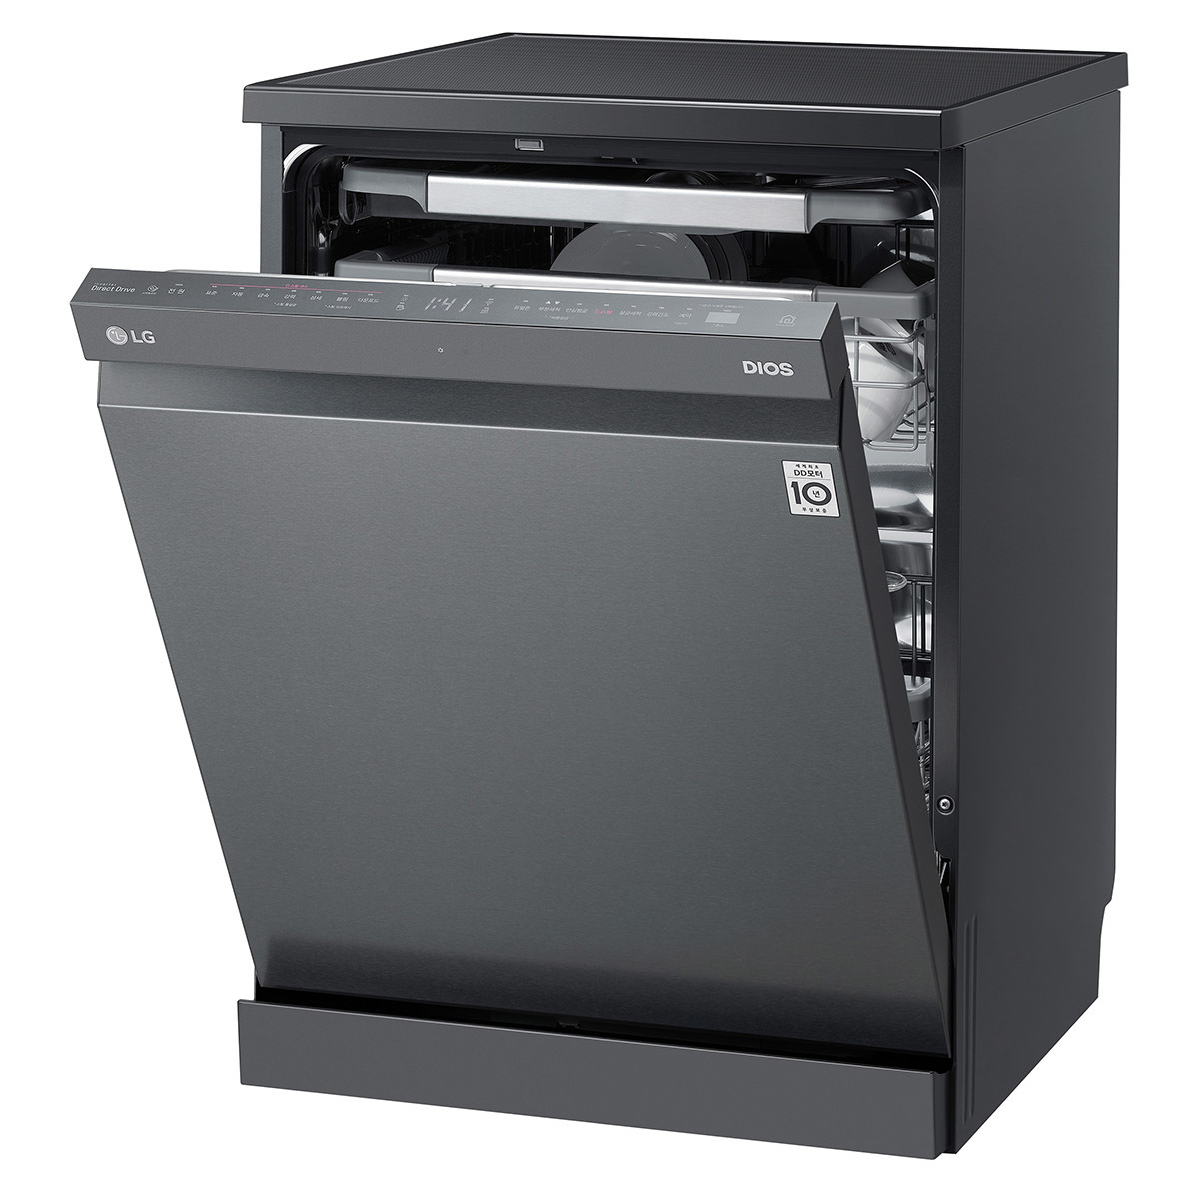 엘지 디오스 식기세척기 (12인용)LG DIOS Dishwasher for 12, 단일상품 